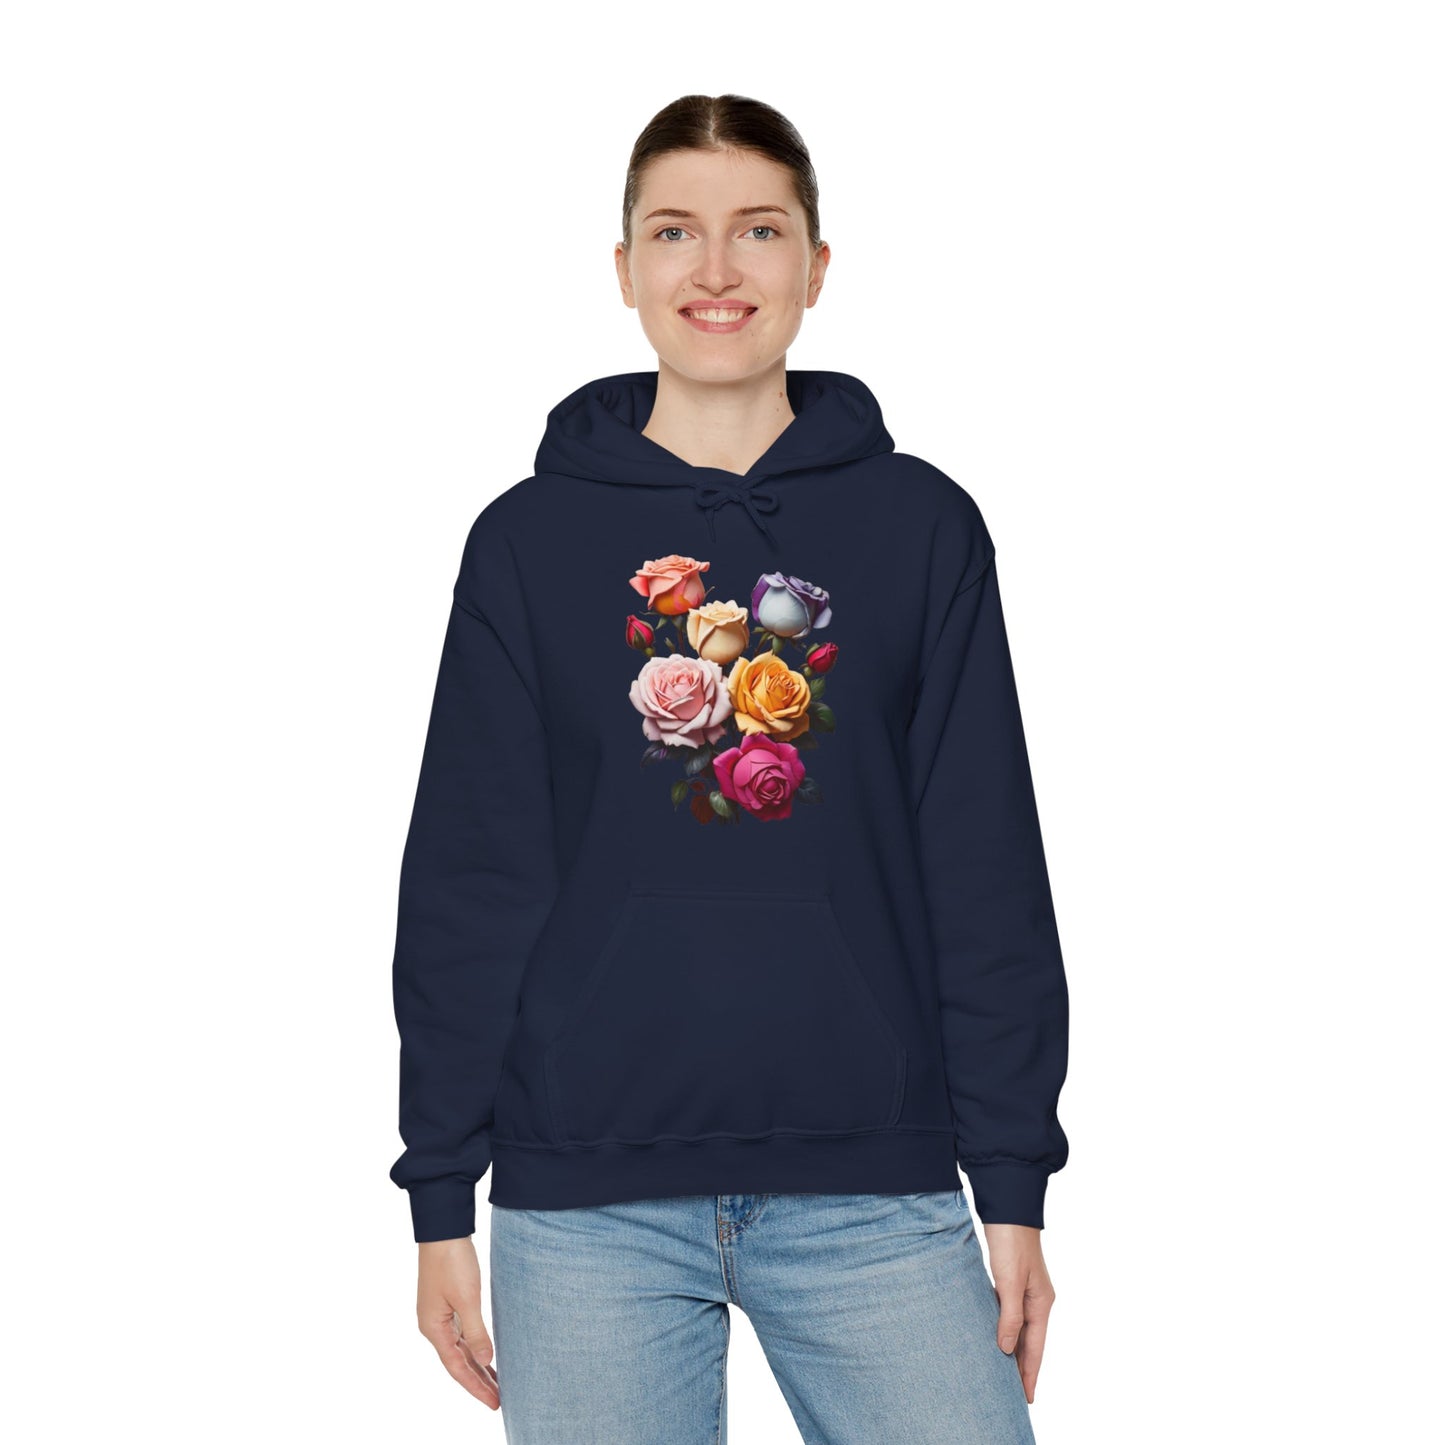 Multicoloured Roses - Unisex Hooded Sweatshirt